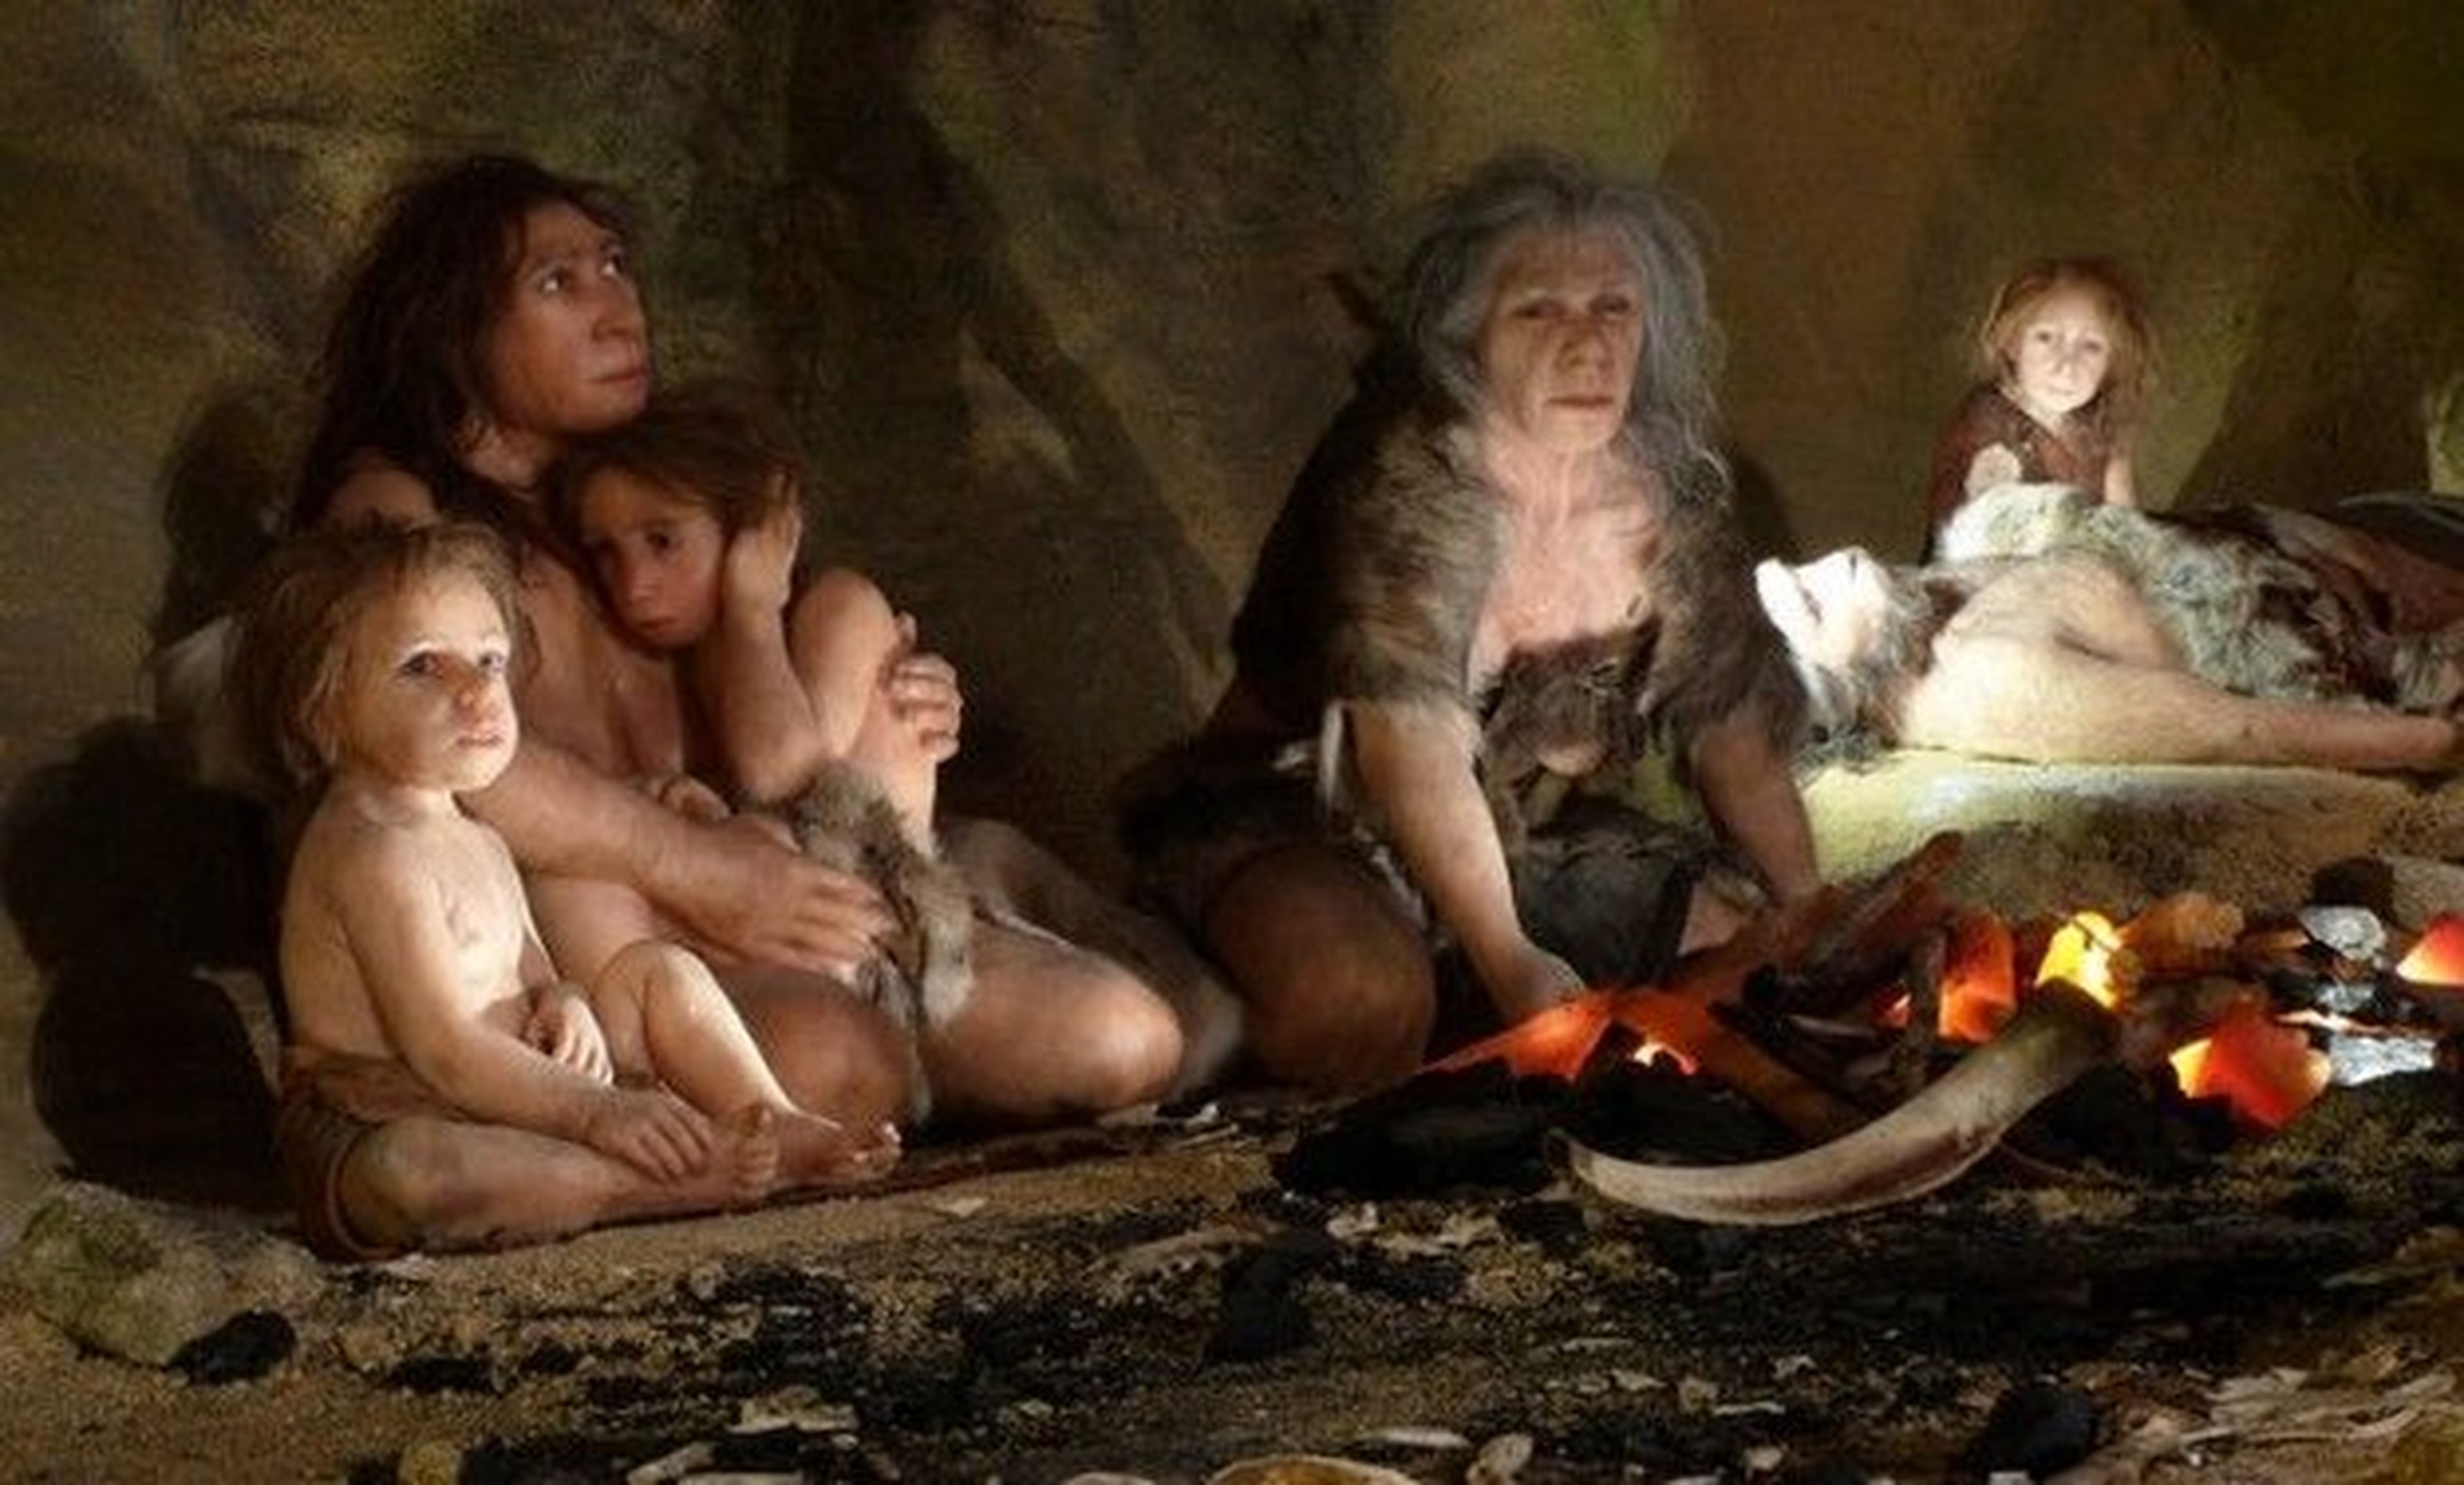 Así vivía un niño prehistórico hace 700.000 años